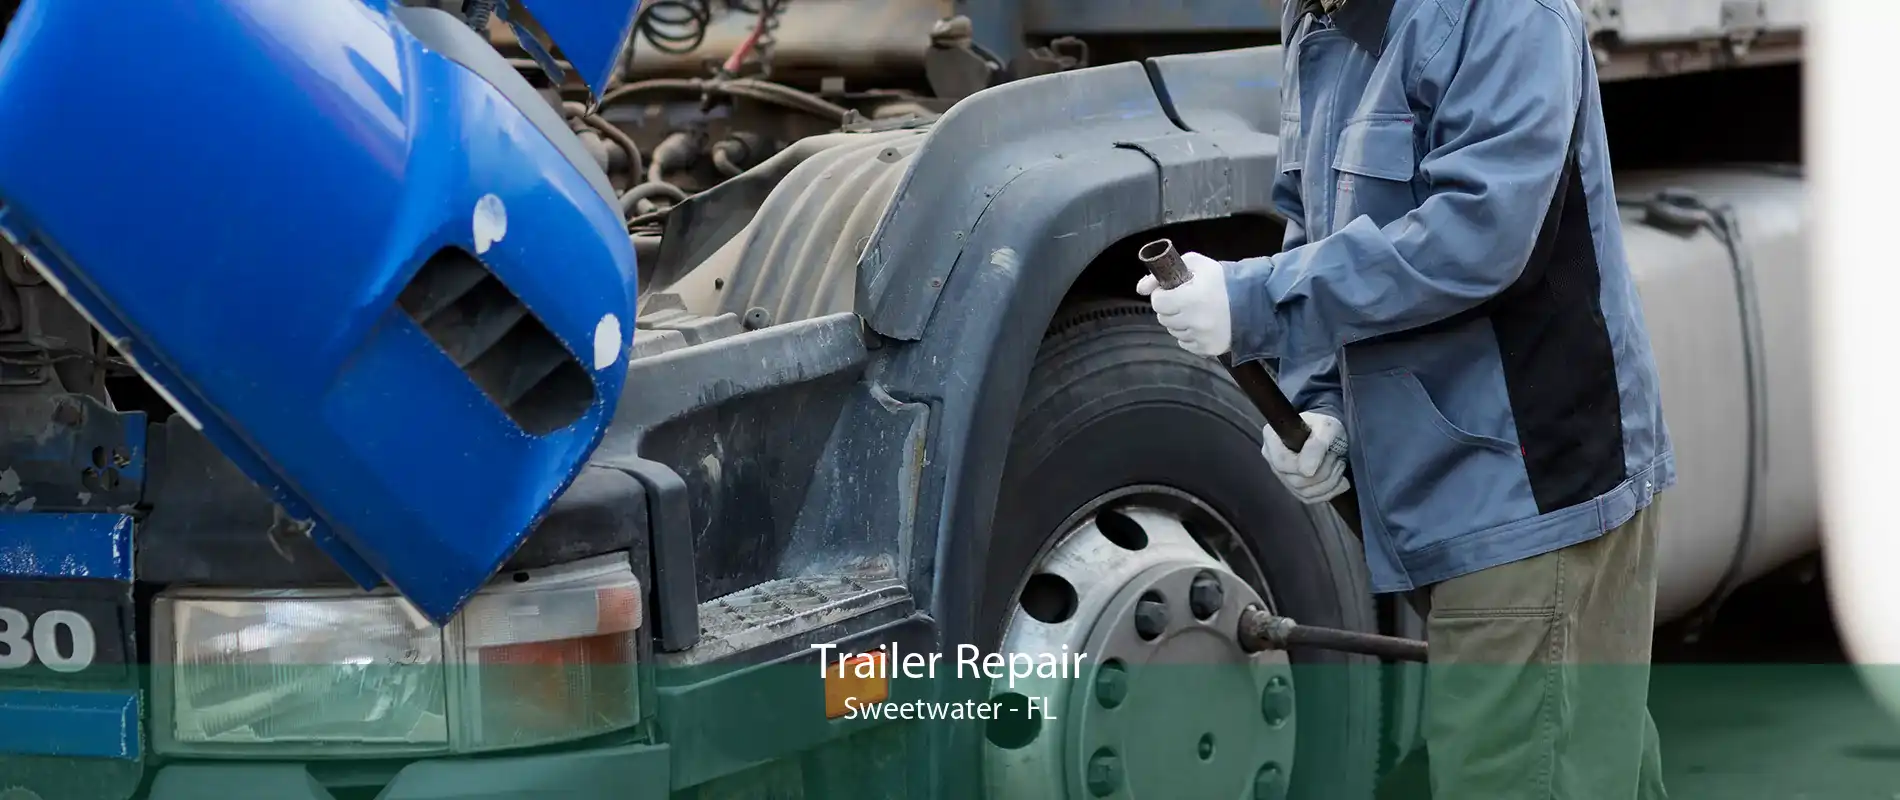 Trailer Repair Sweetwater - FL